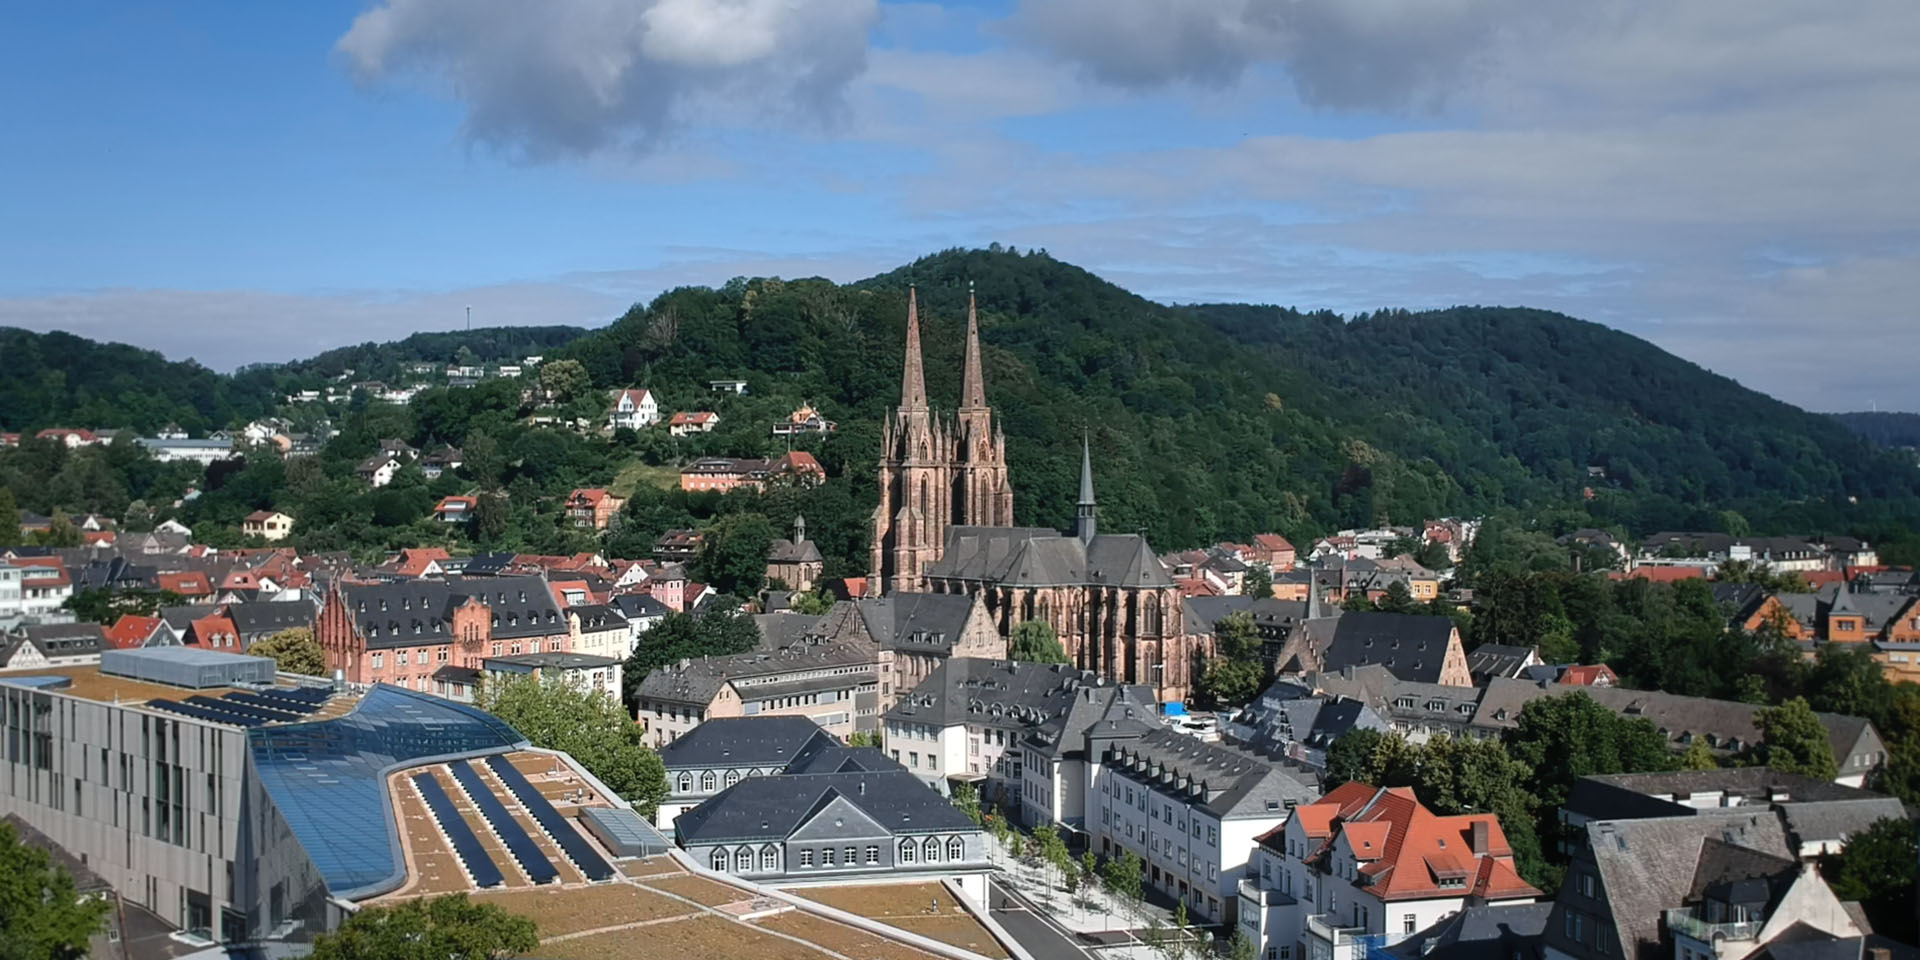 Philipps-Universität Marburg | "Jura studieren in Marburg" | Imagefilm